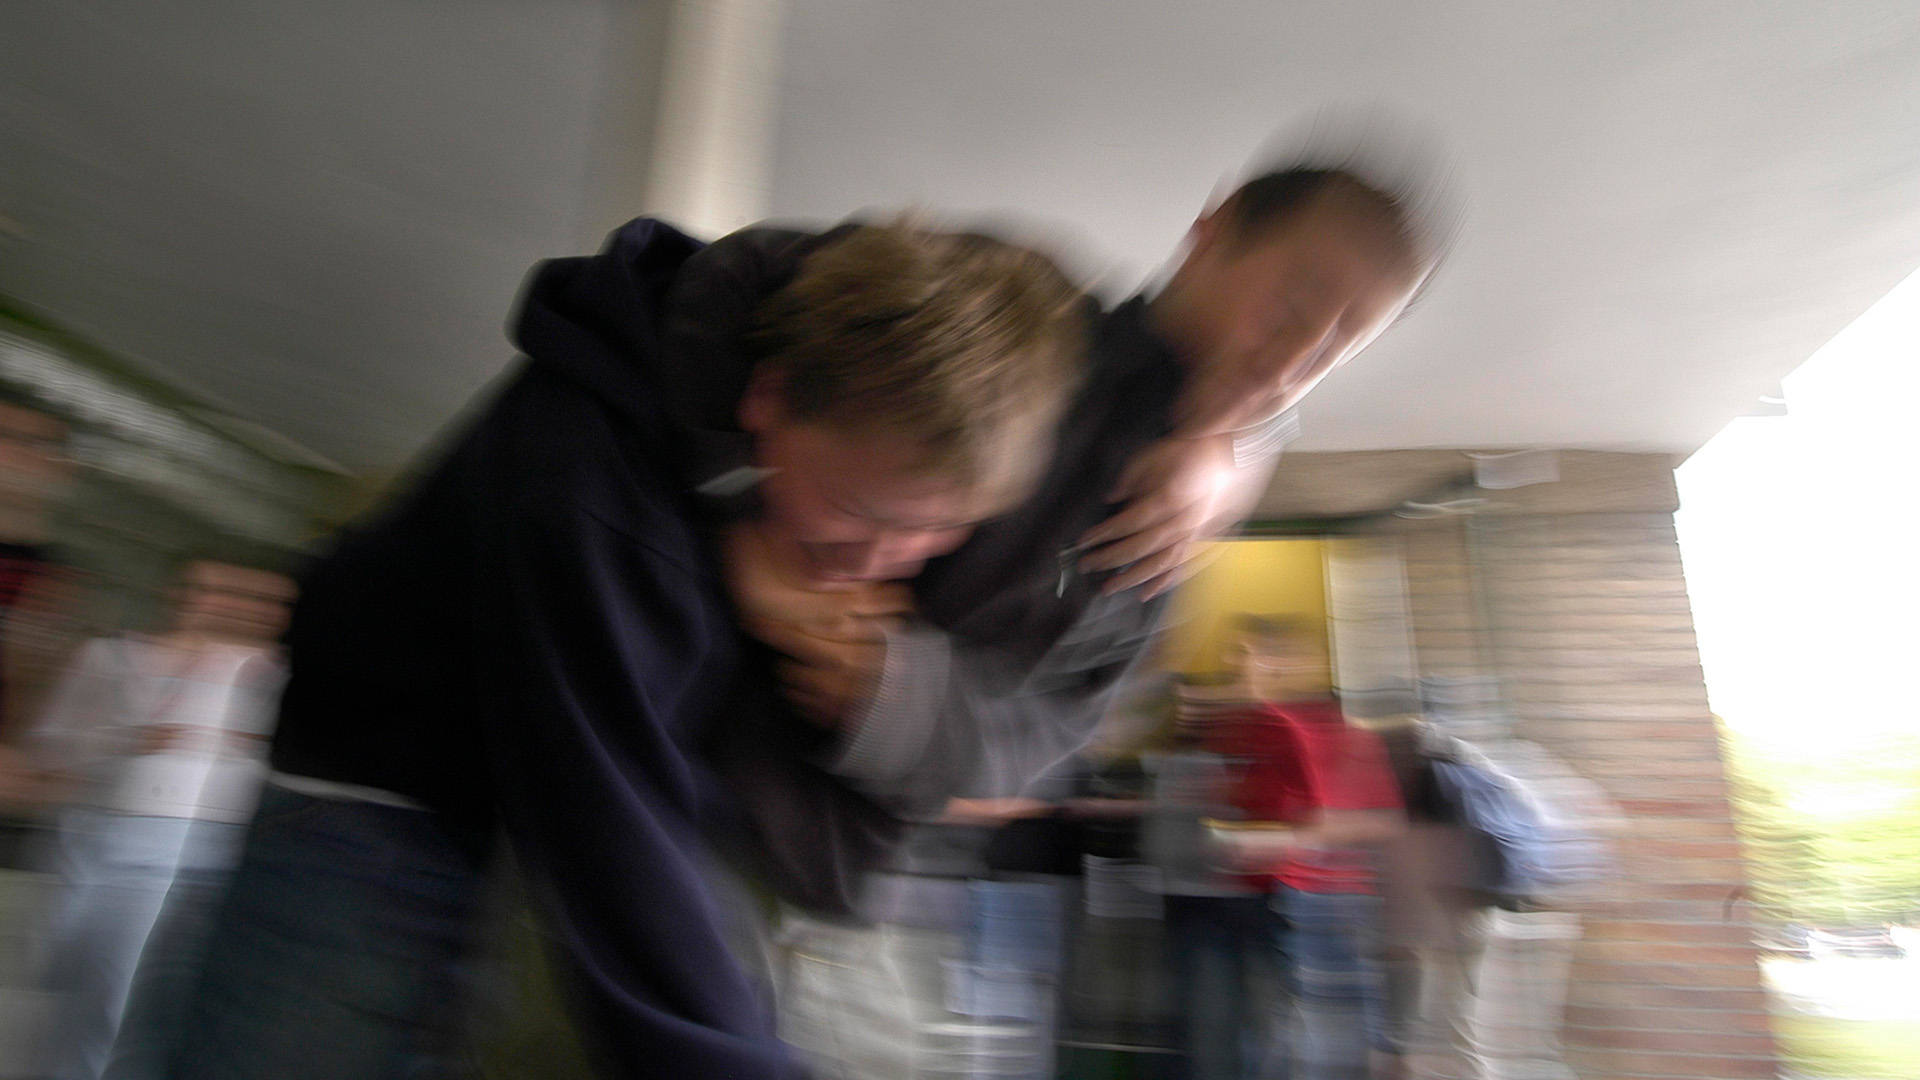 Symbolbild: Zwei Jugendliche prügeln sich und sind von anderen Jugendlichen umstellt. (Quelle: imago images/Michalke)